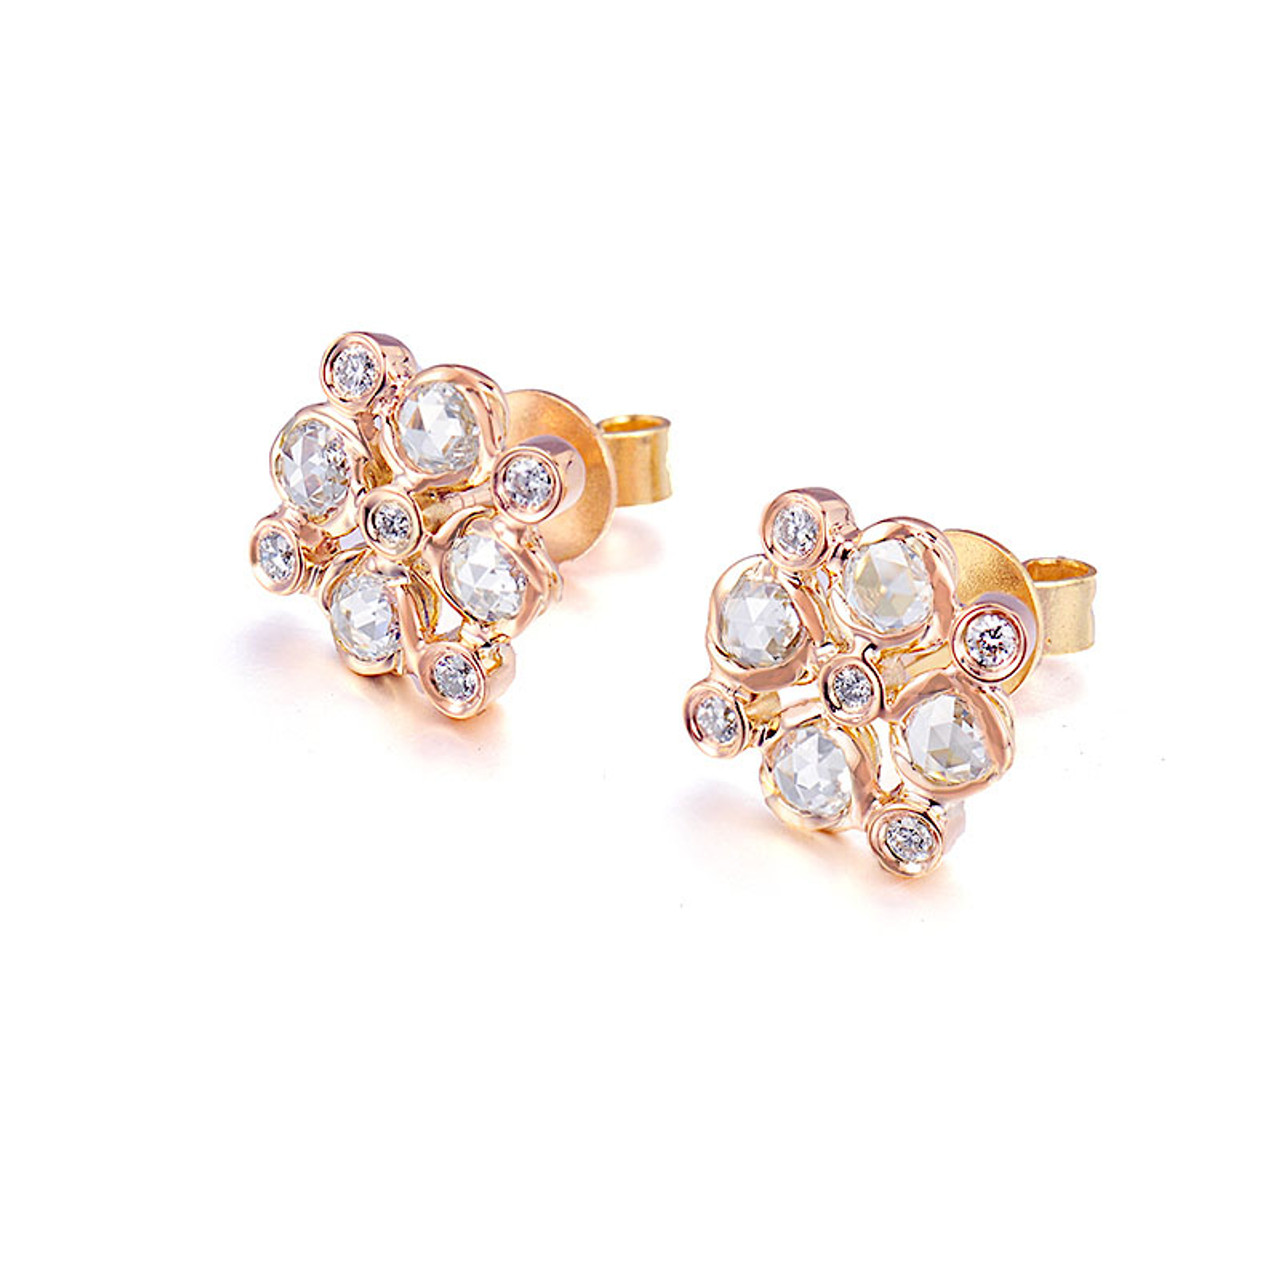 Diamond Earring at Rs 37359/pair | हीरे की बाली in Mumbai | ID: 19409613997